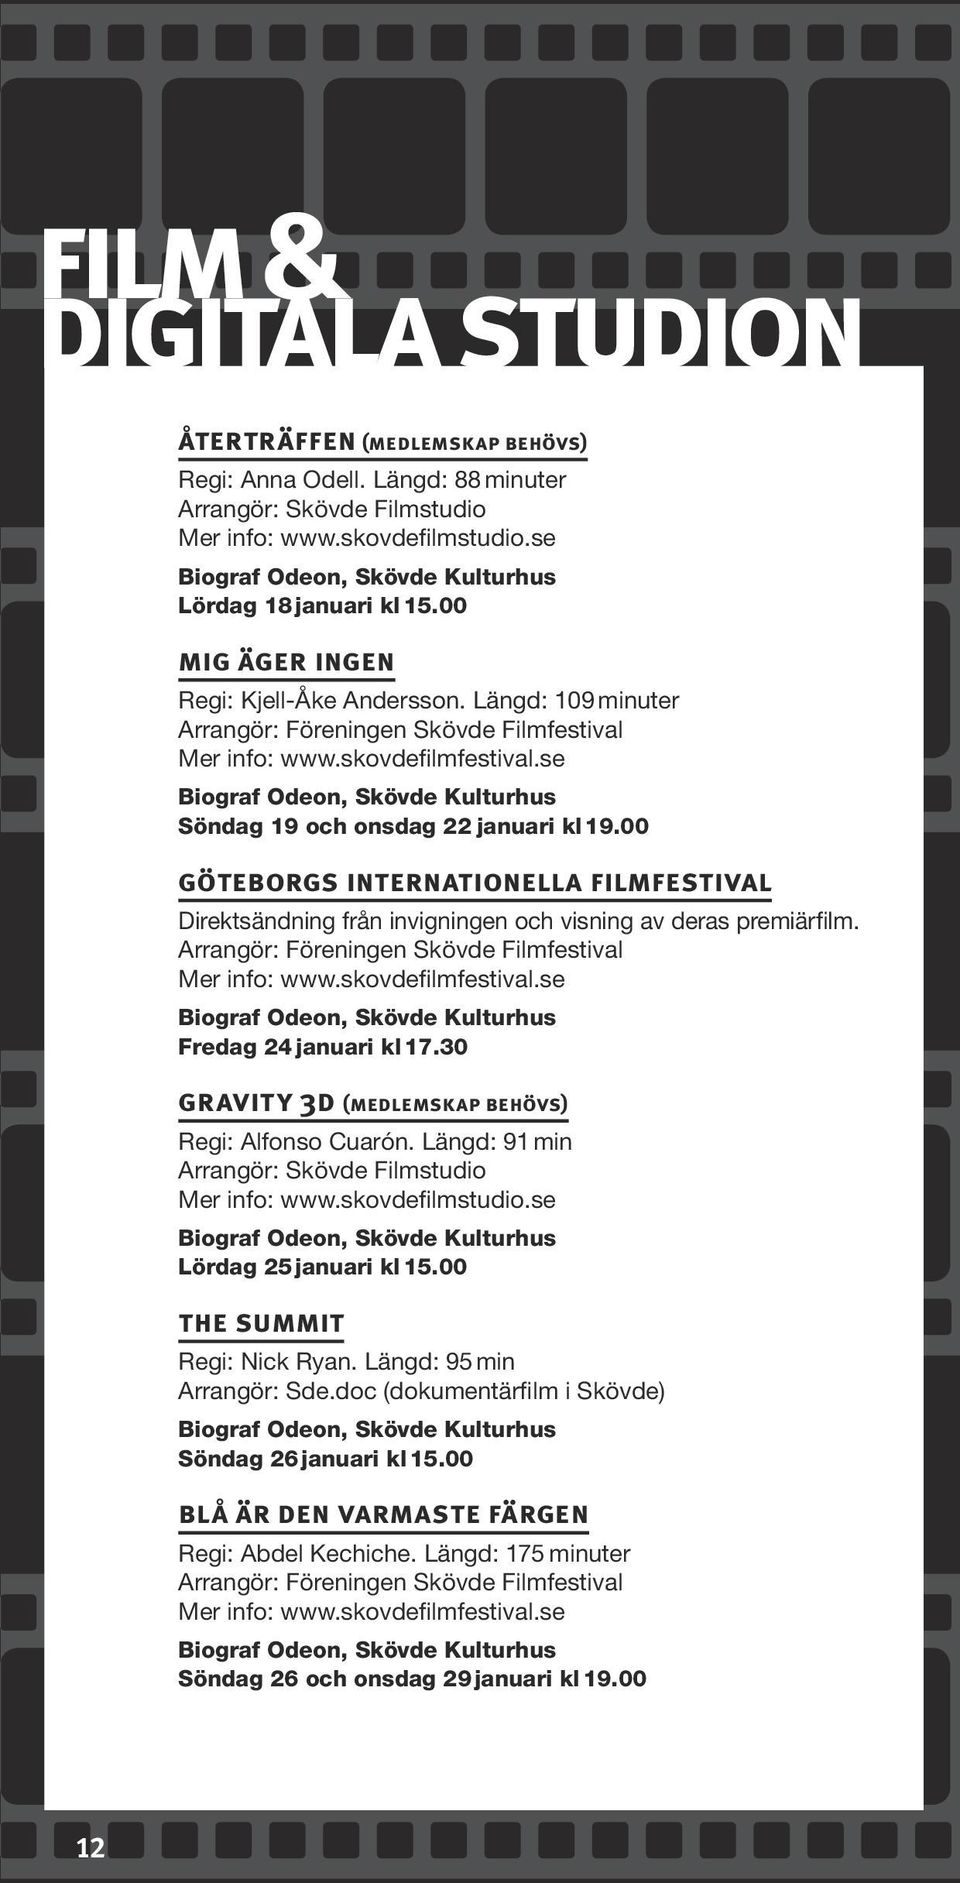 00 göteborgs internationella filmfestival Direktsändning från invigningen och visning av deras premiärfilm. Arrangör: Föreningen Skövde Filmfestival Mer info: www.skovdefilmfestival.